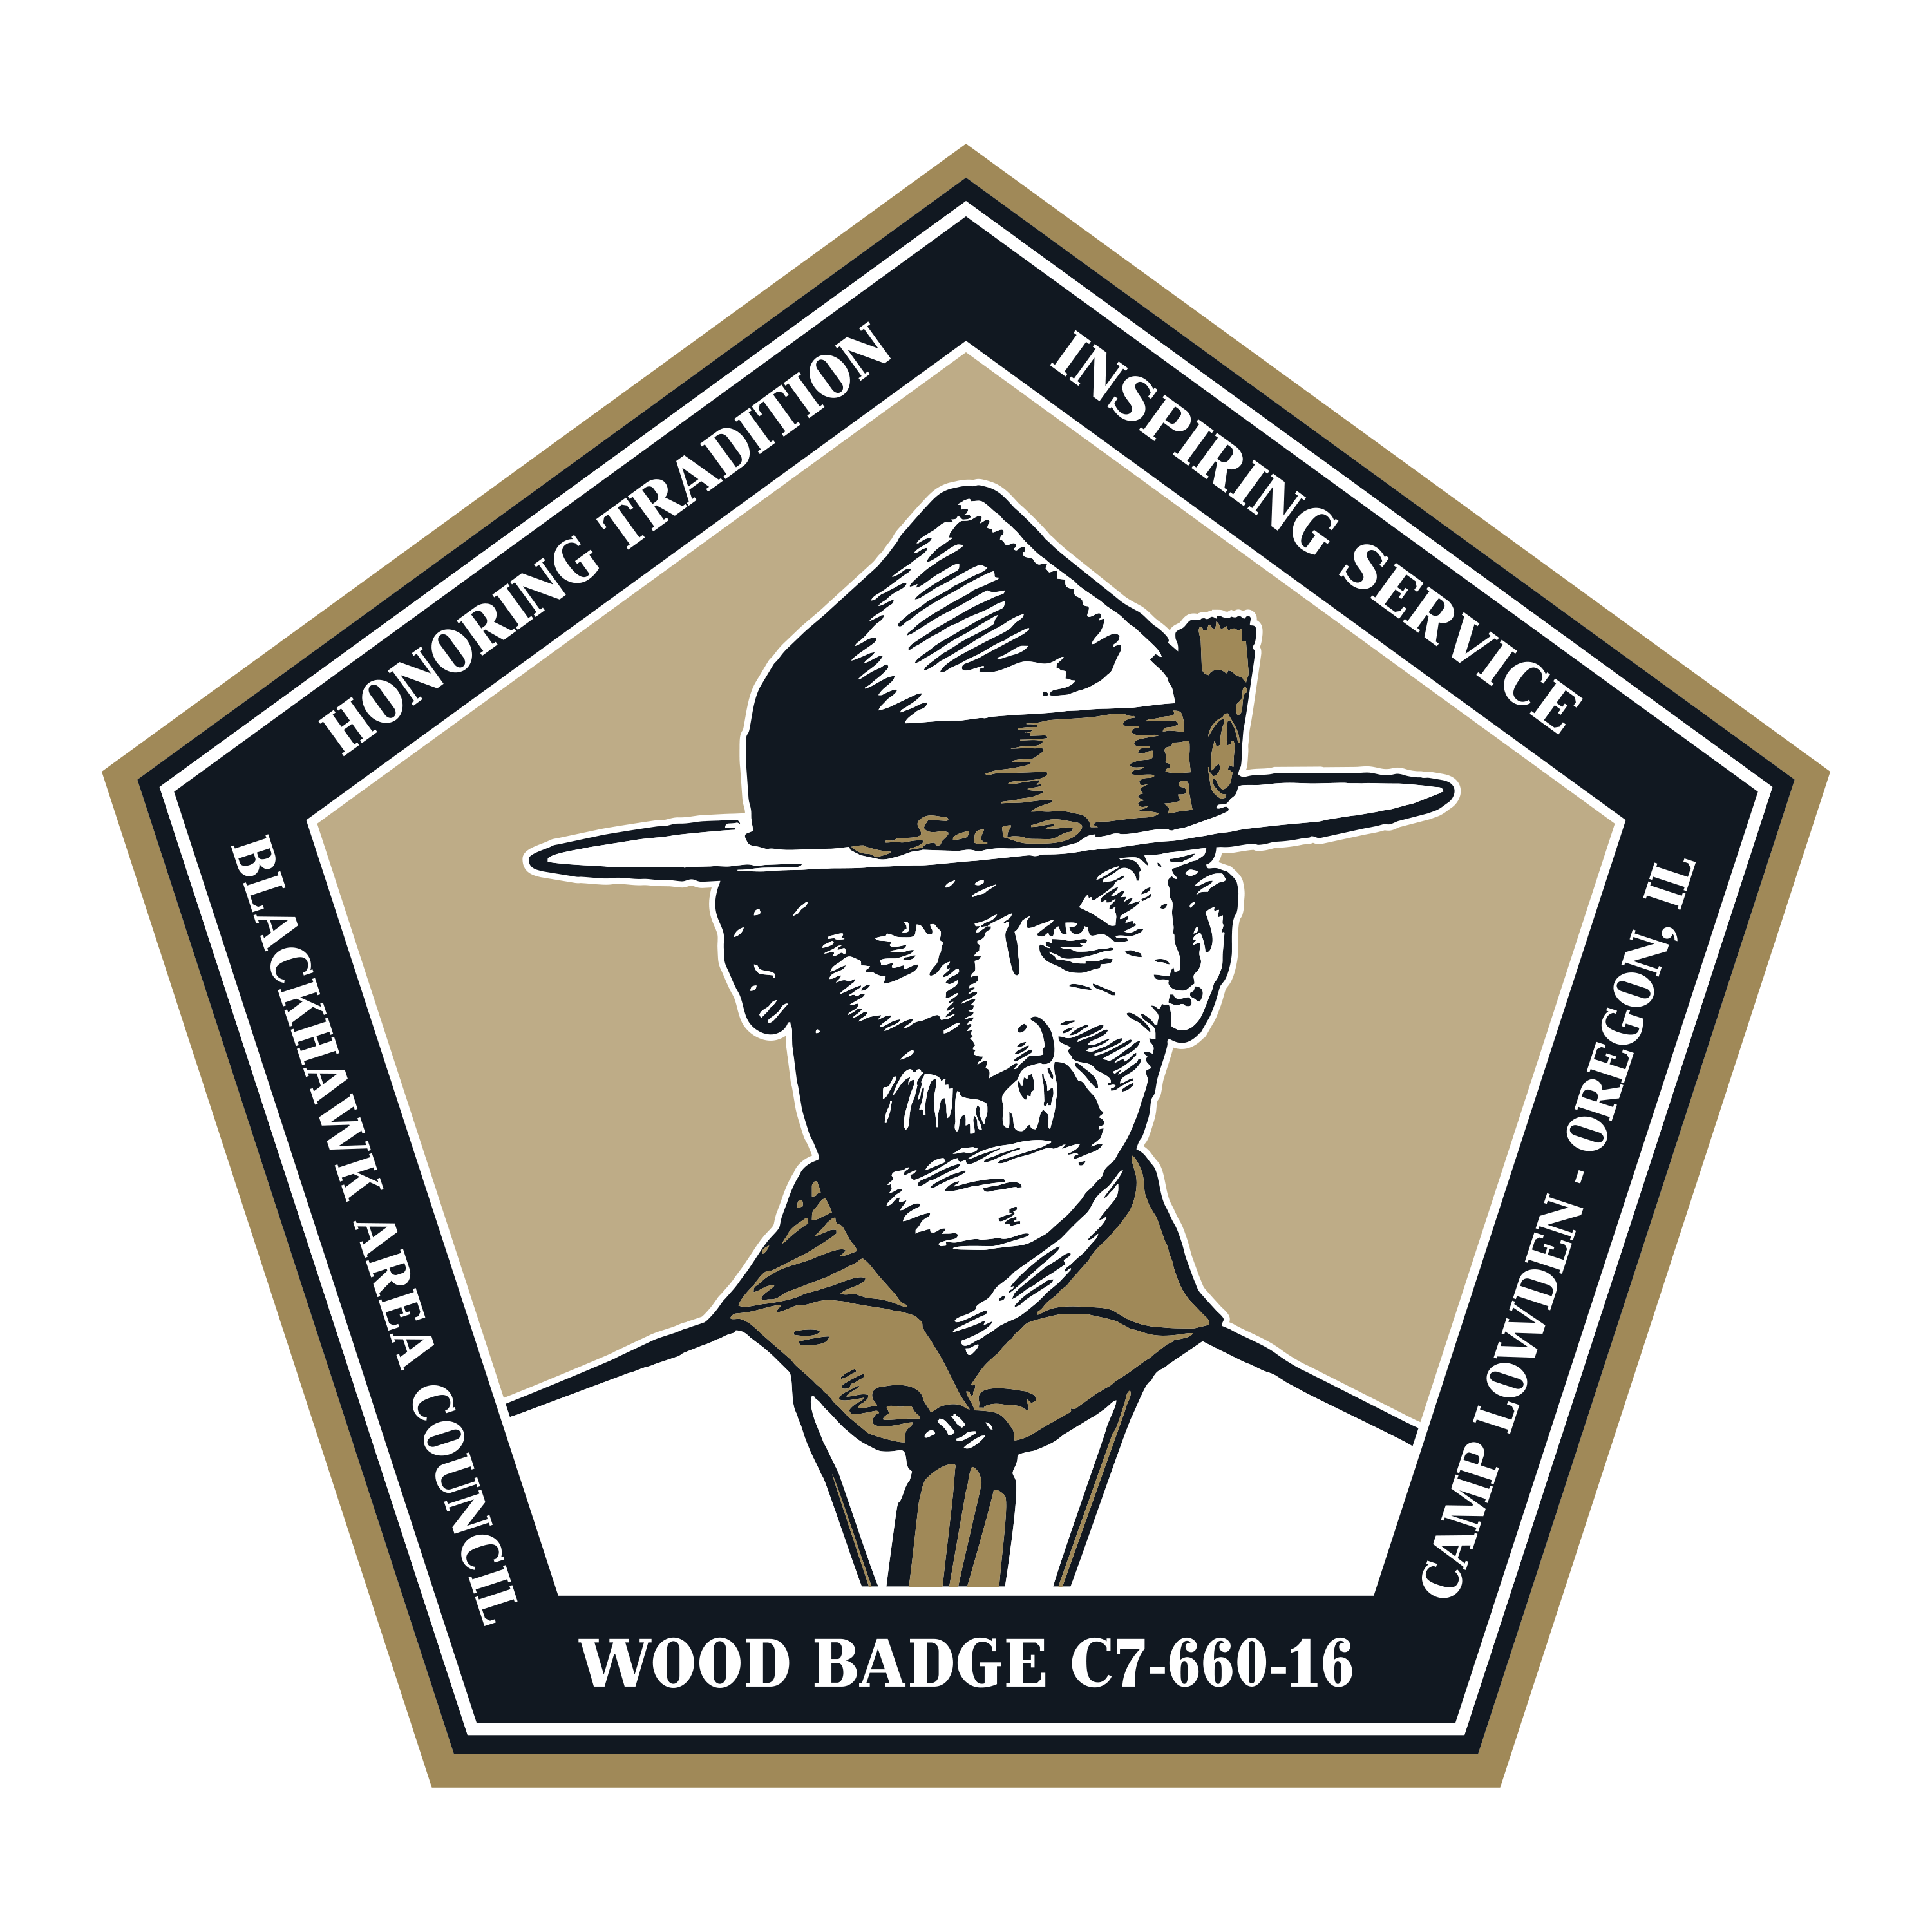 Wood Badge 2016 Weekend One 5724